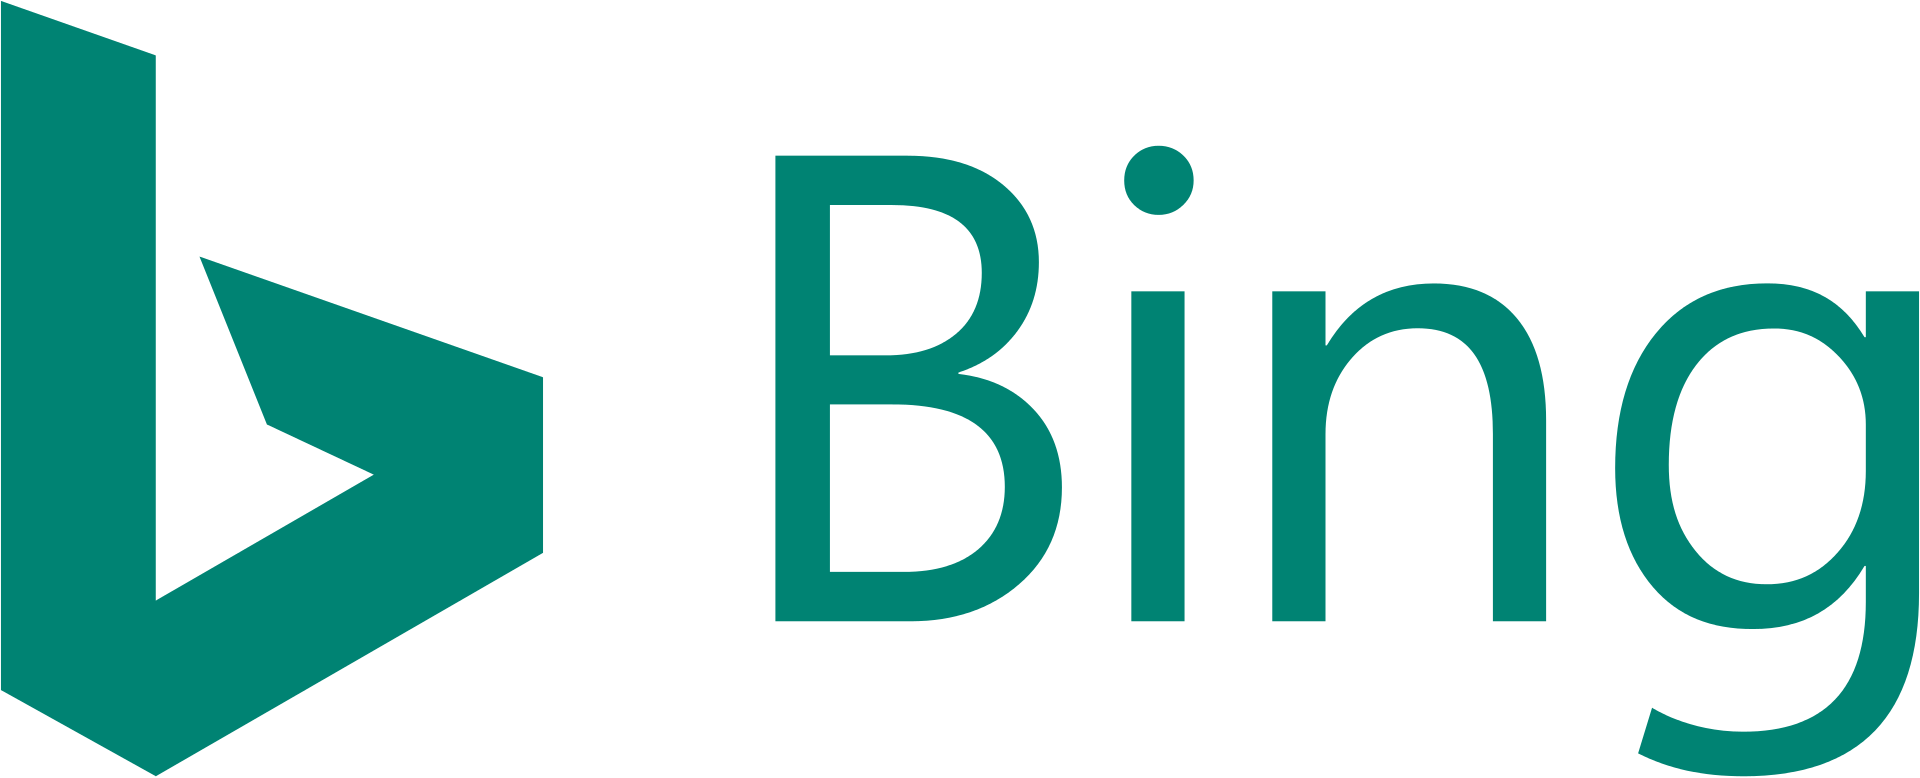 Bing_logo__2016_.svg.png